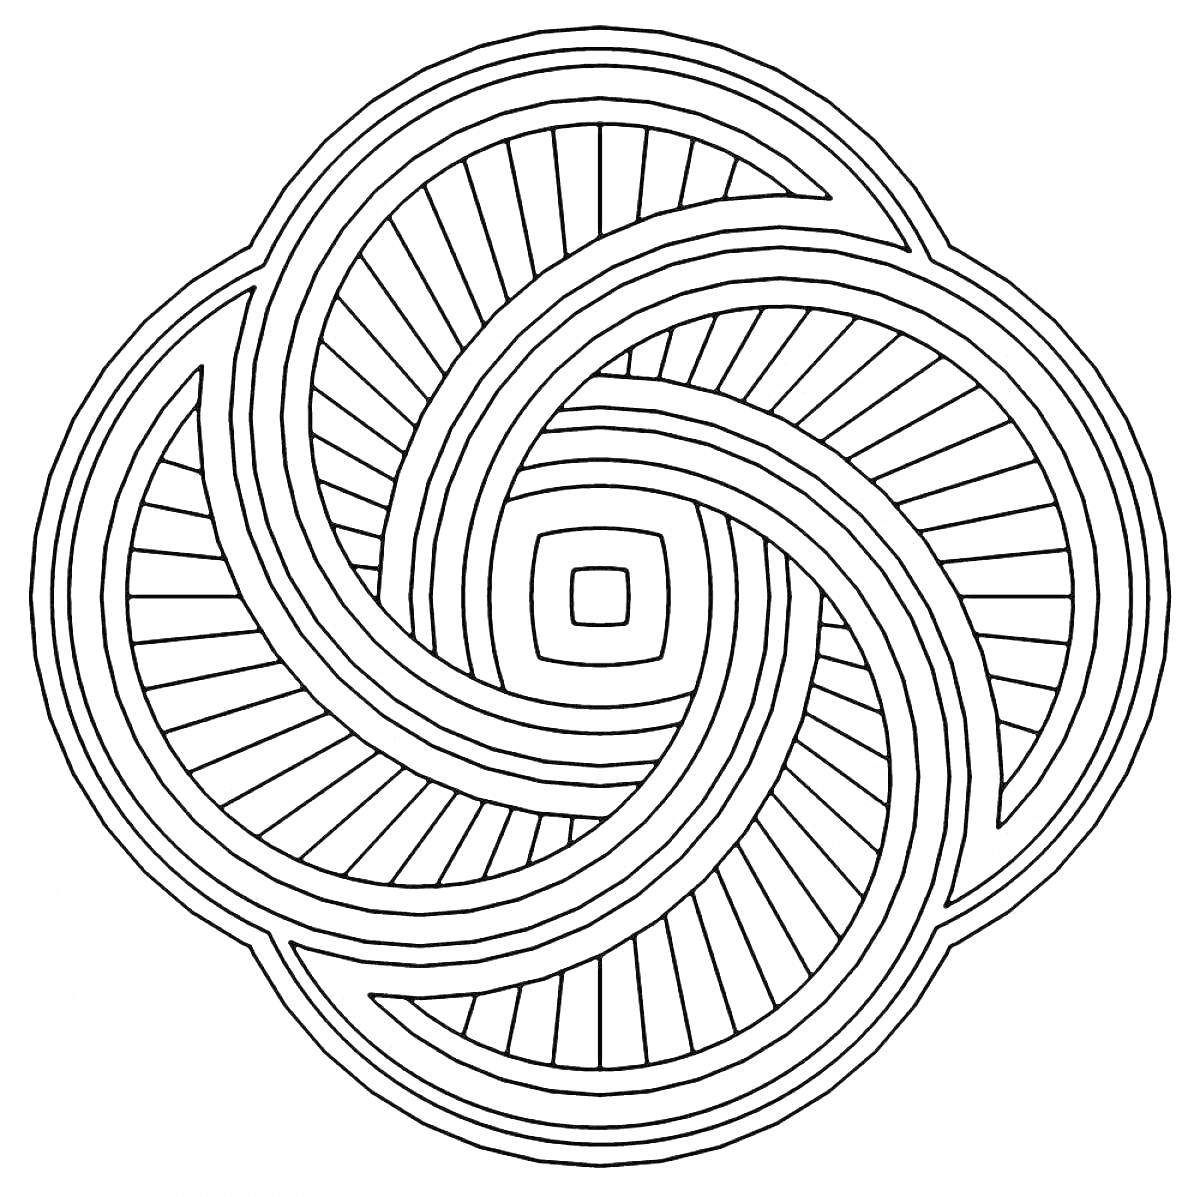 Раскраска Спиралевидная раскраска с элементами переплетения и геометрической точностью